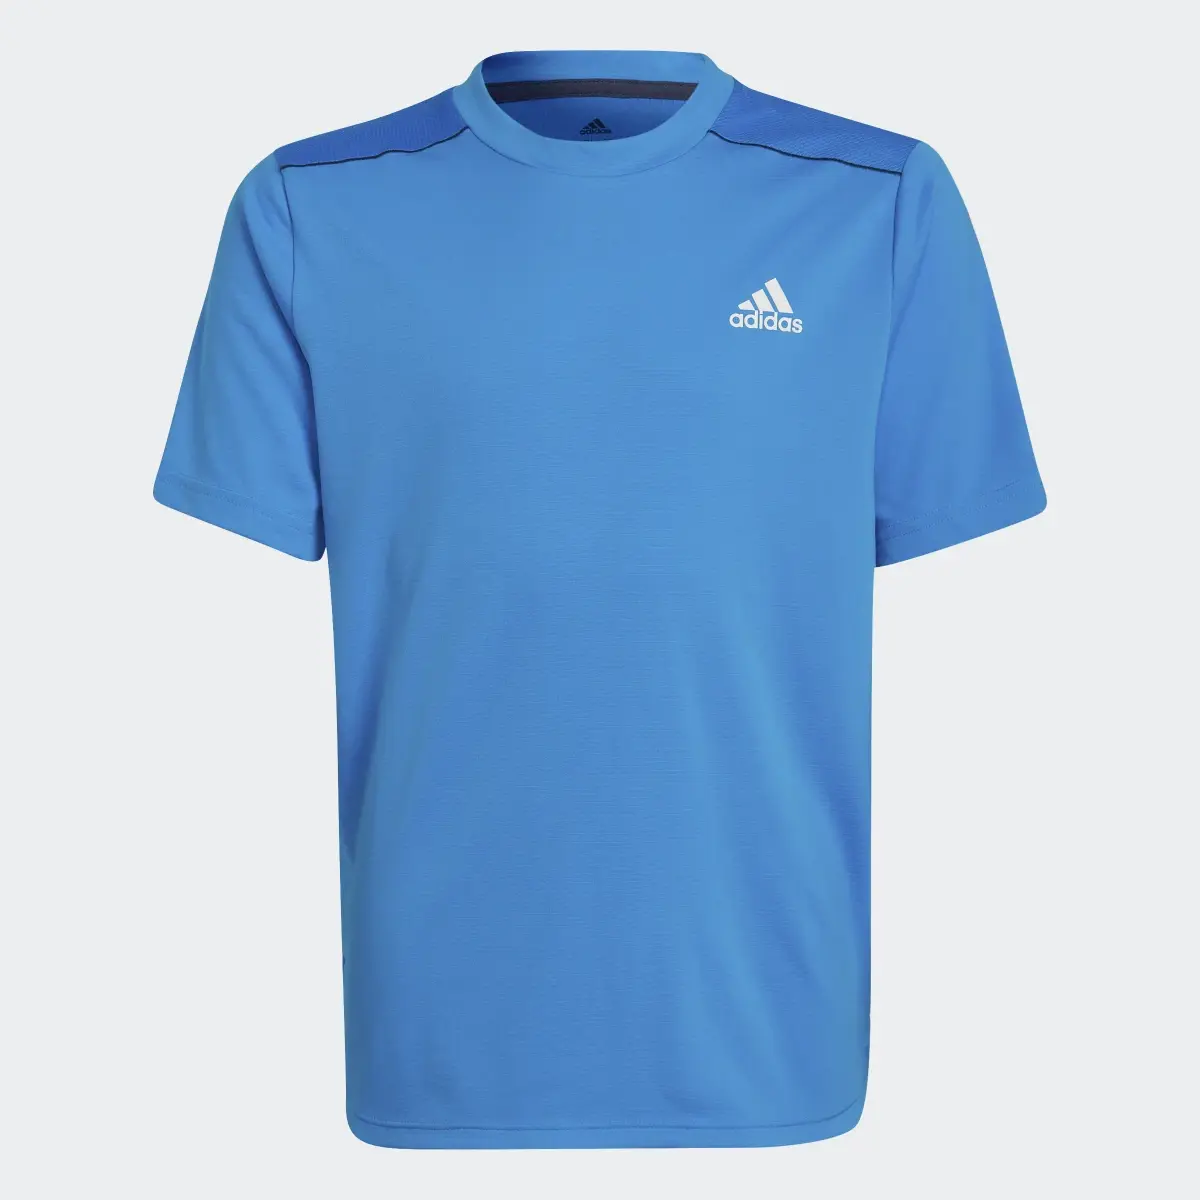 Adidas T-shirt AEROREADY Designed for Sport. 1